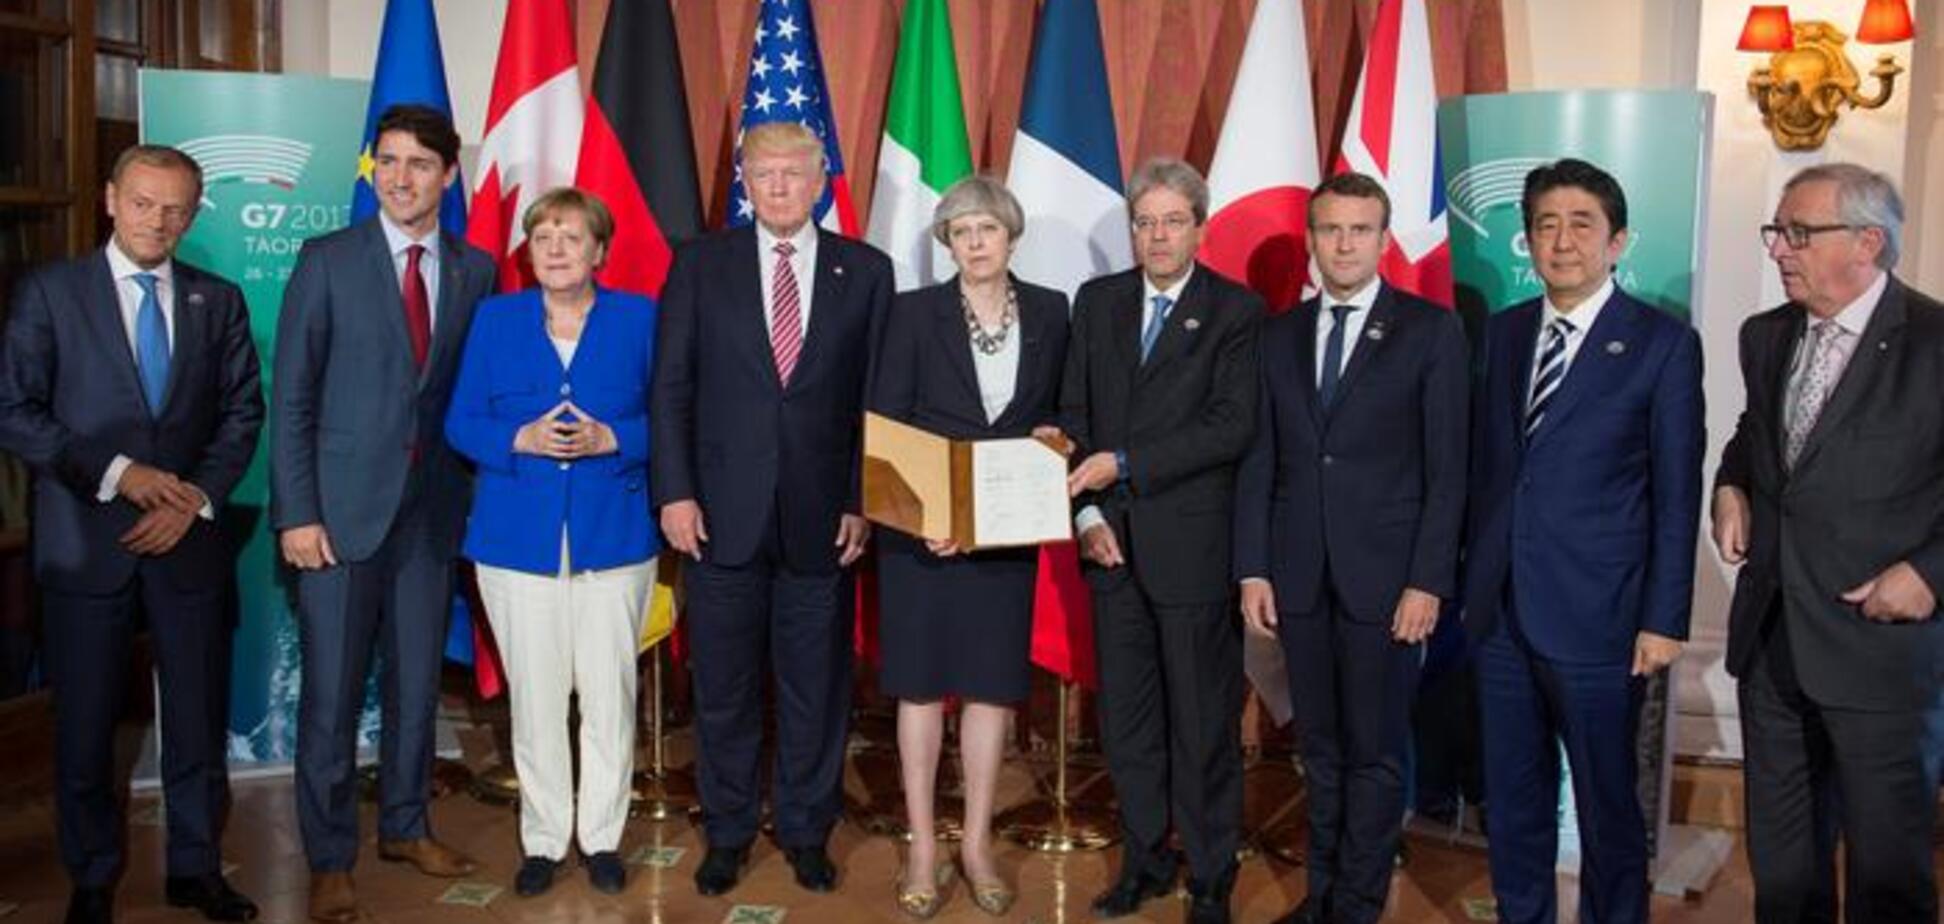 Россия заплатит: cтраны G7 встали на сторону Украины. Итоговое заявление